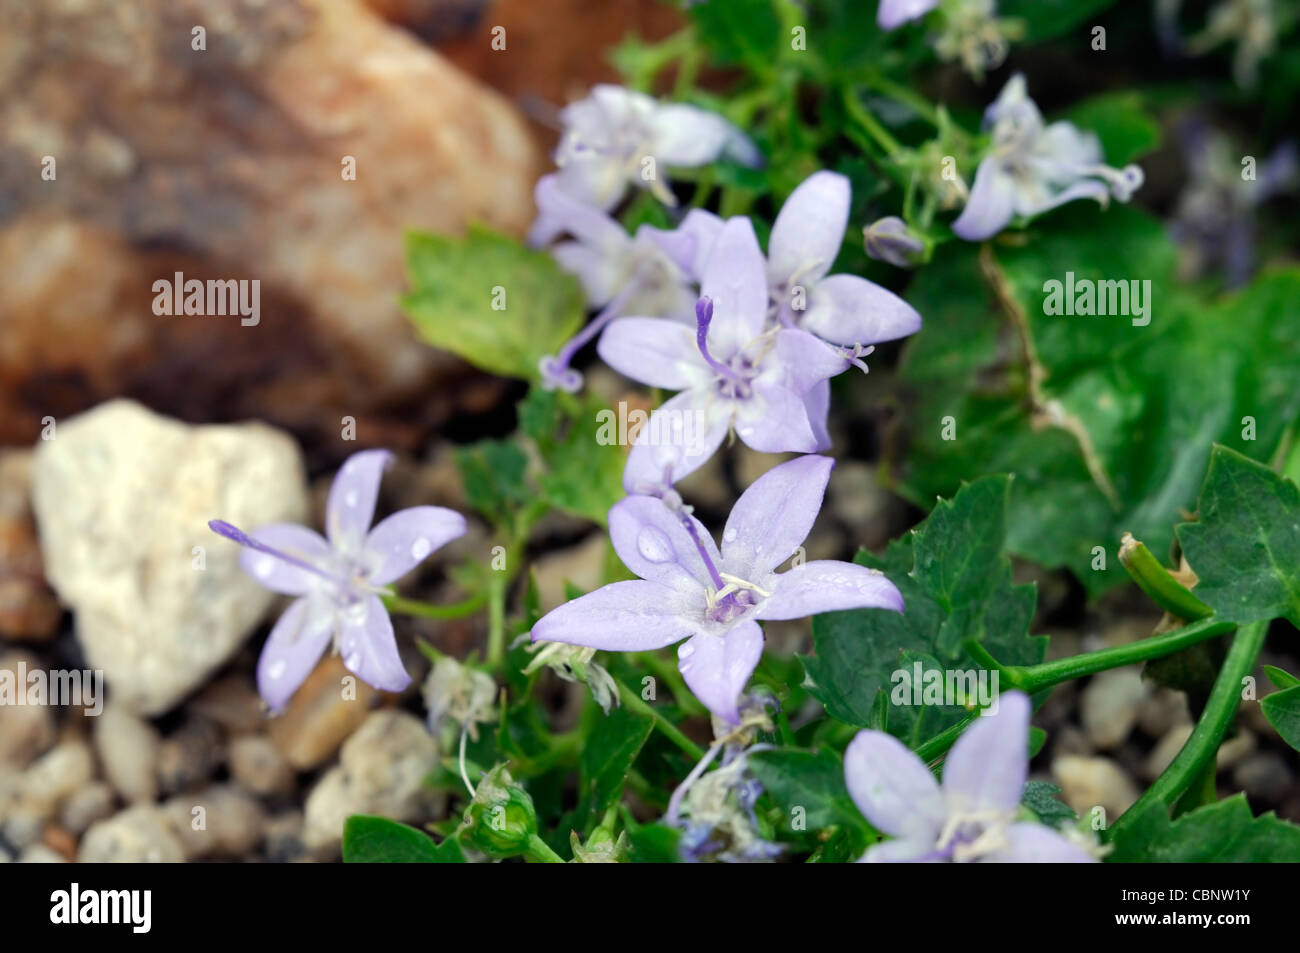 Campanula garganica campanule viola blu pallido blumi blossoms petali di fiori ritratti di piante perenni alpine Foto Stock